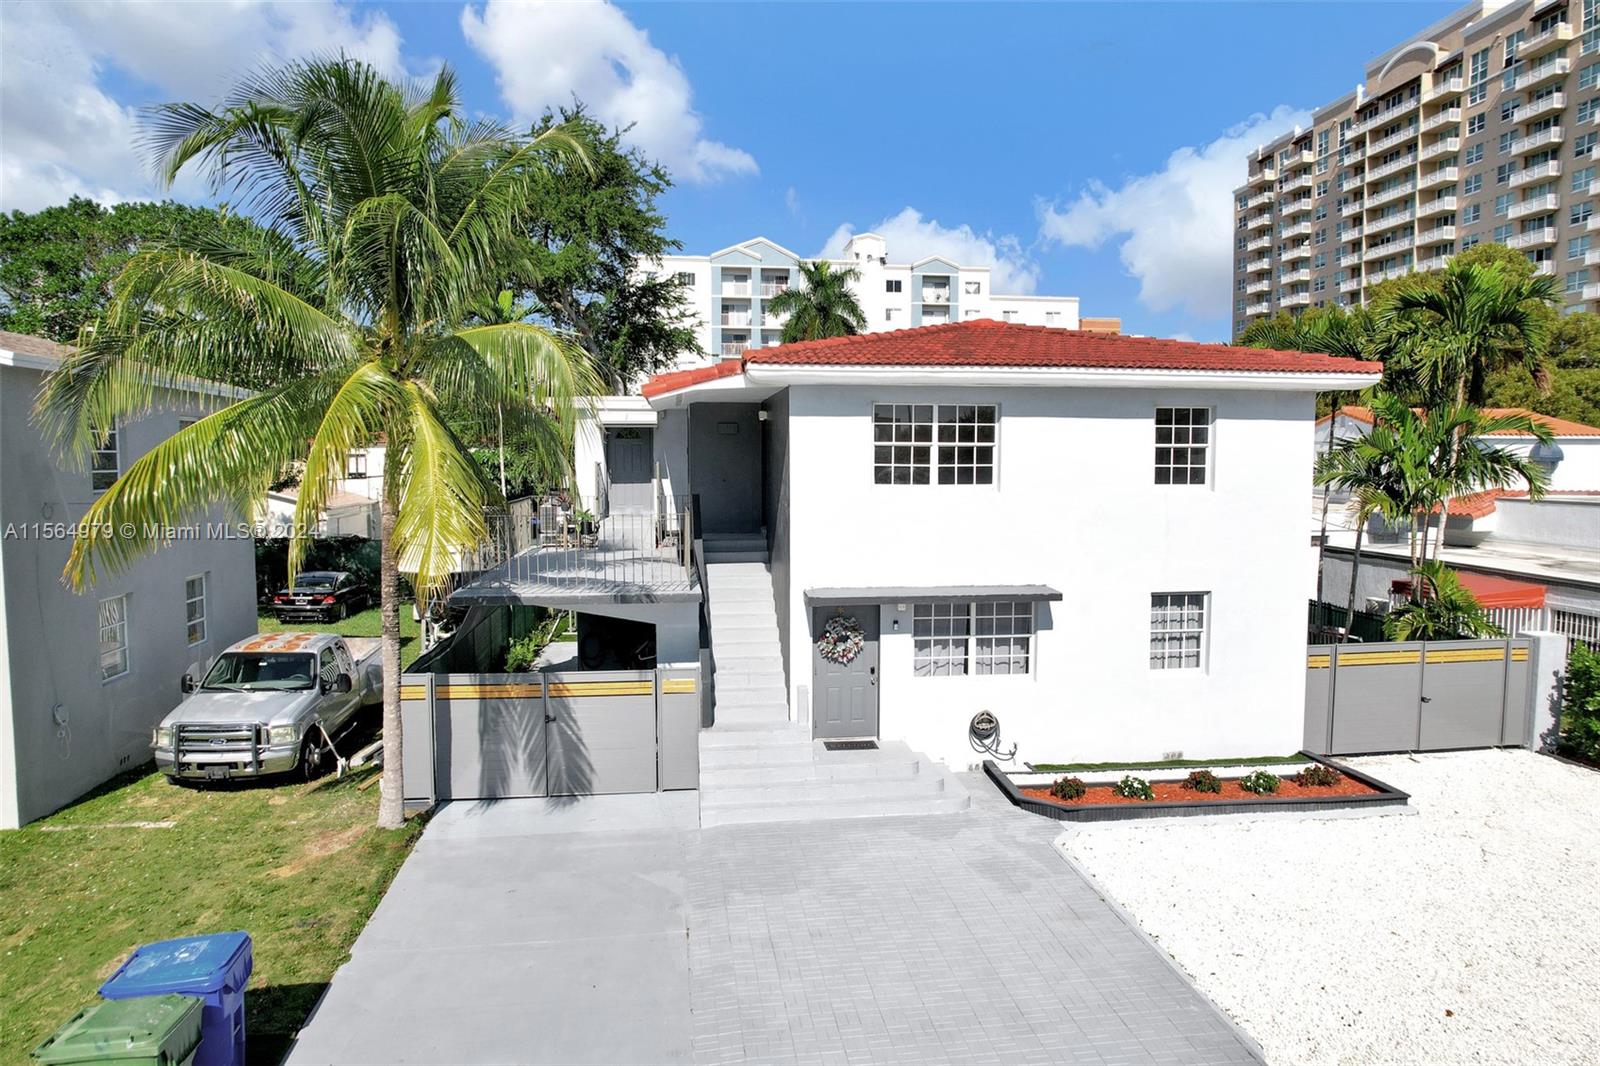 Rental Property at 3711 Sw 27th Ter, Miami, Broward County, Florida -  - $2,050,000 MO.